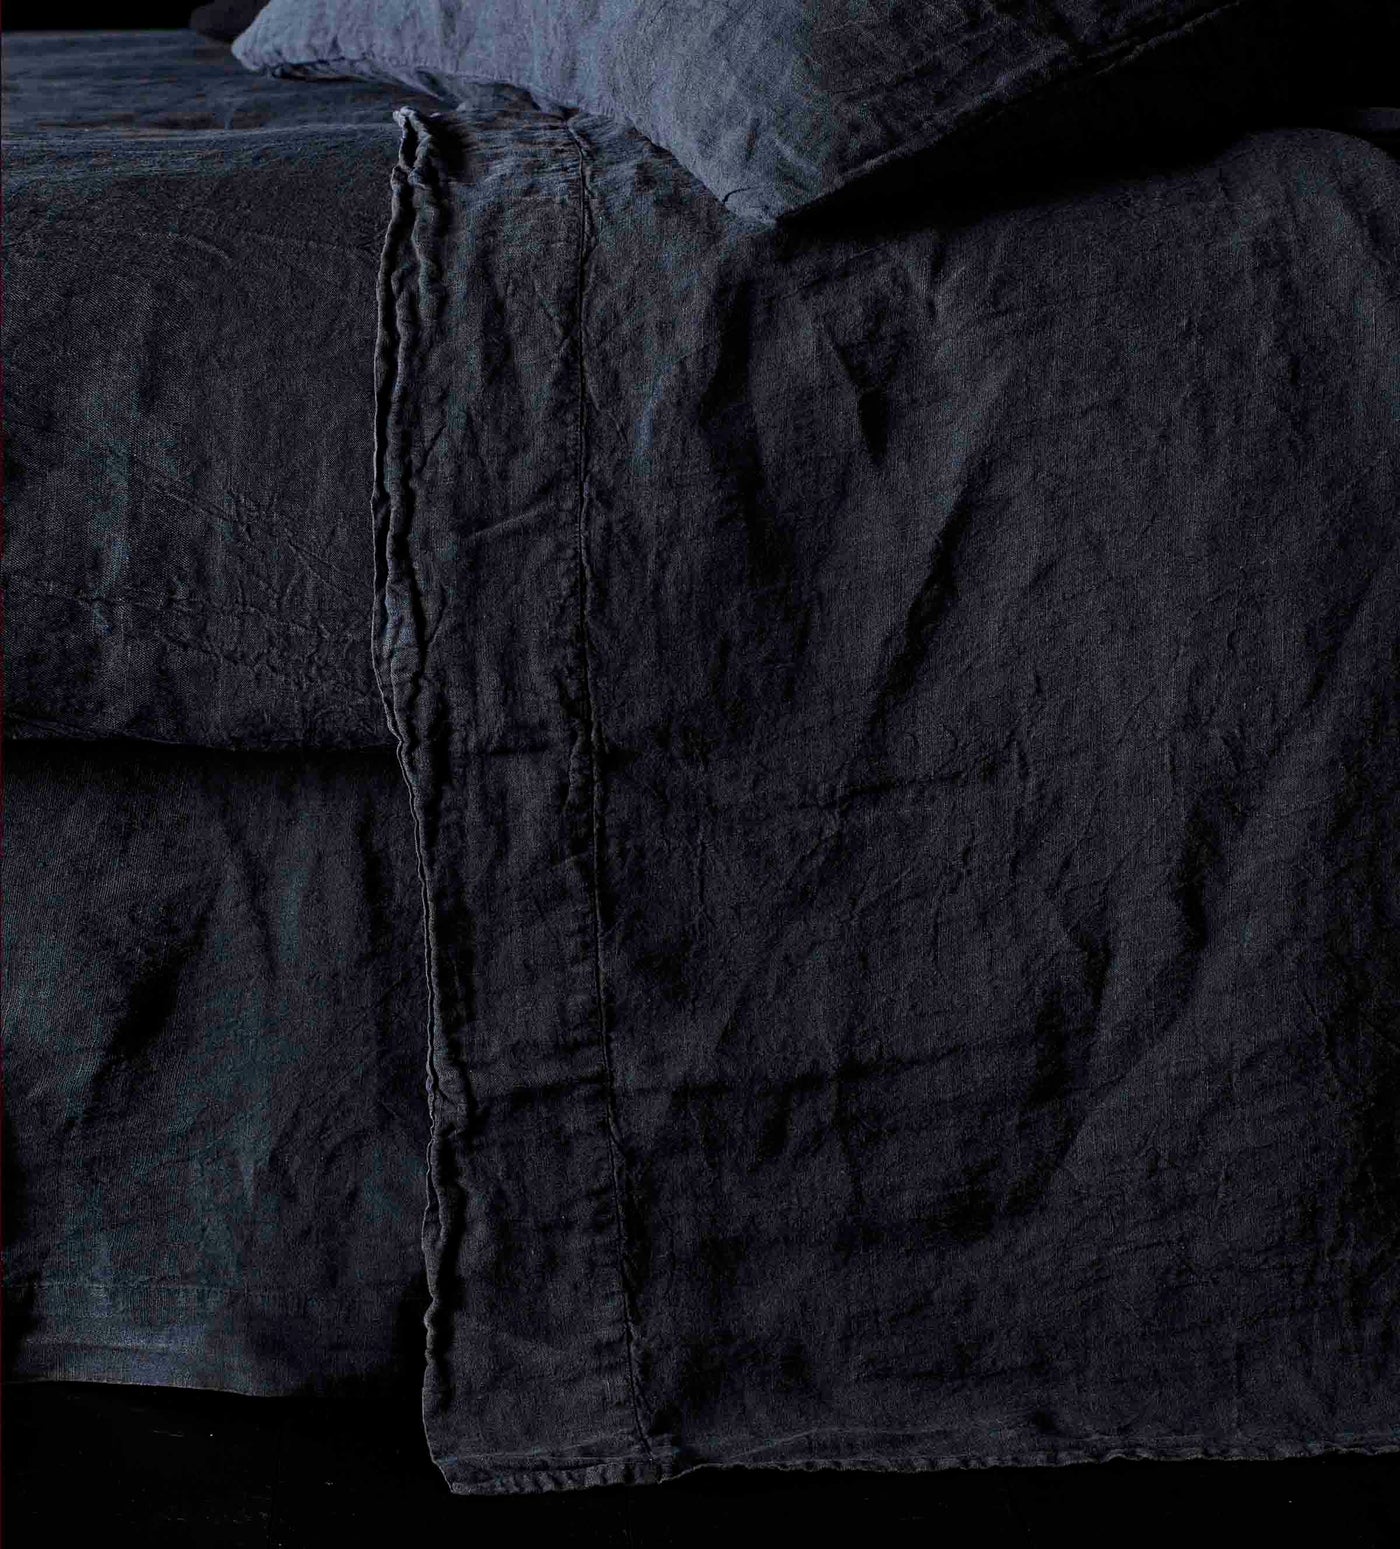 Black 100% Linen Flat Sheet